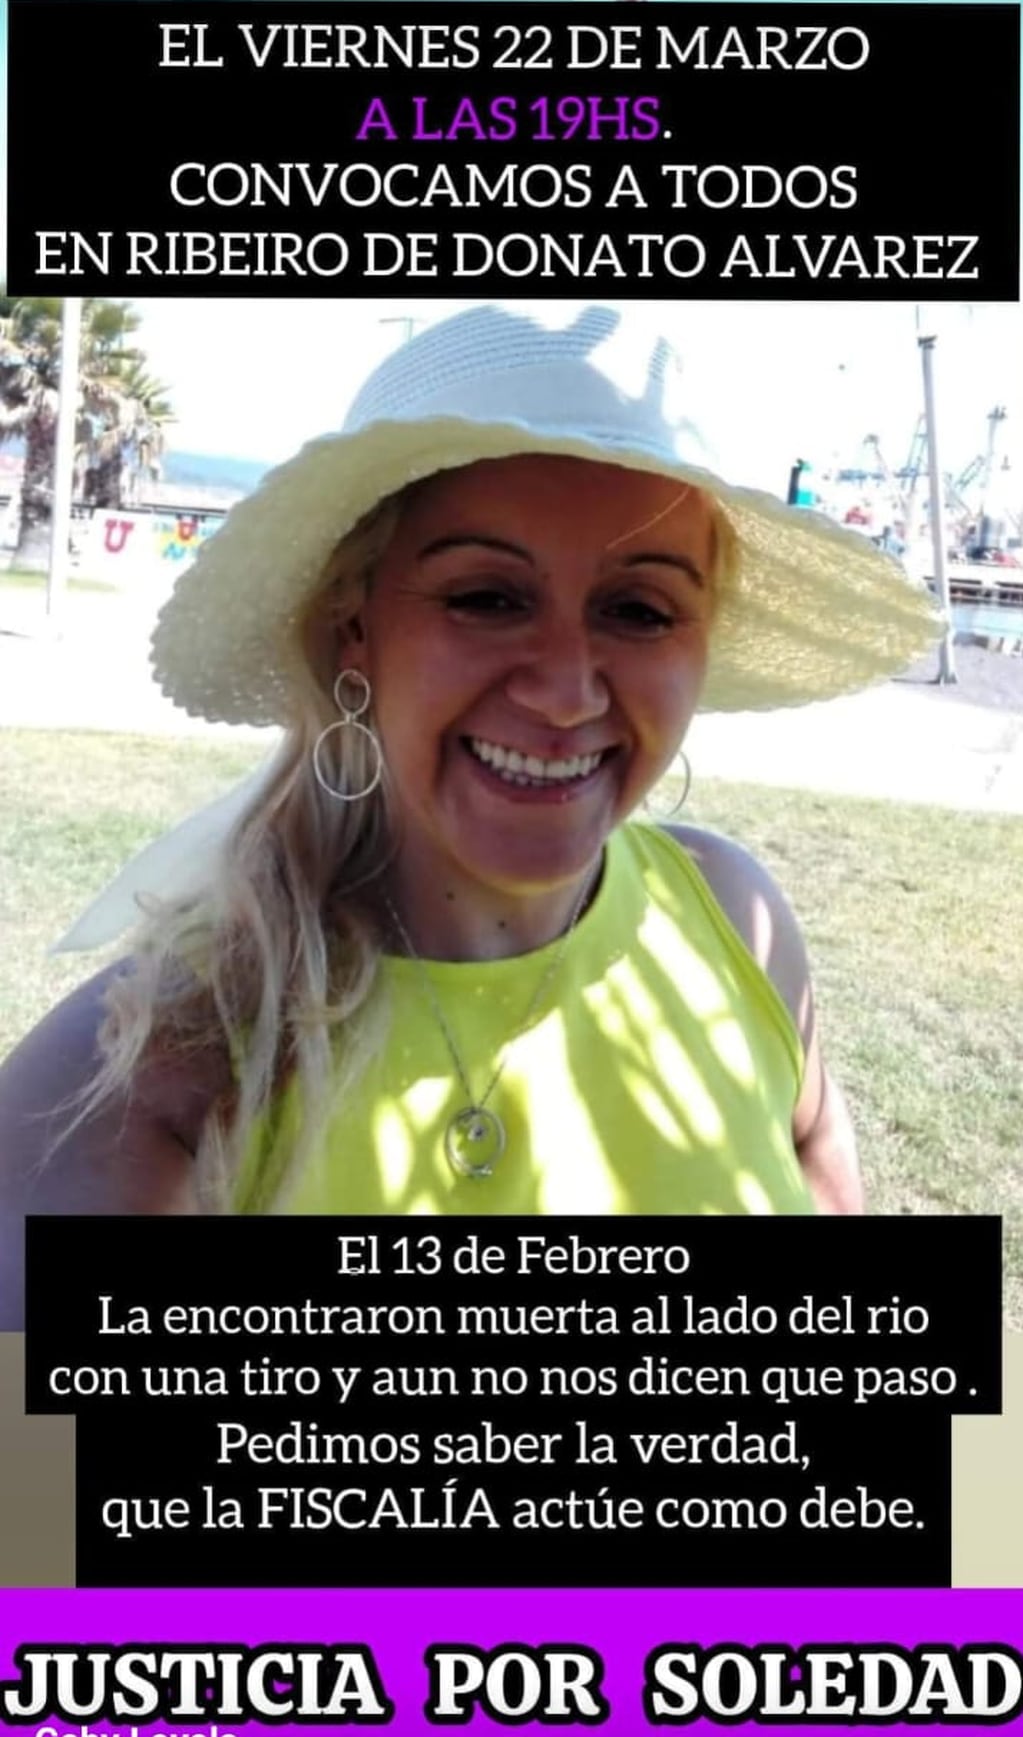 Soledad apareció muerta hace más de un mes en Córdoba y aún no se sabe qué le sucedió.